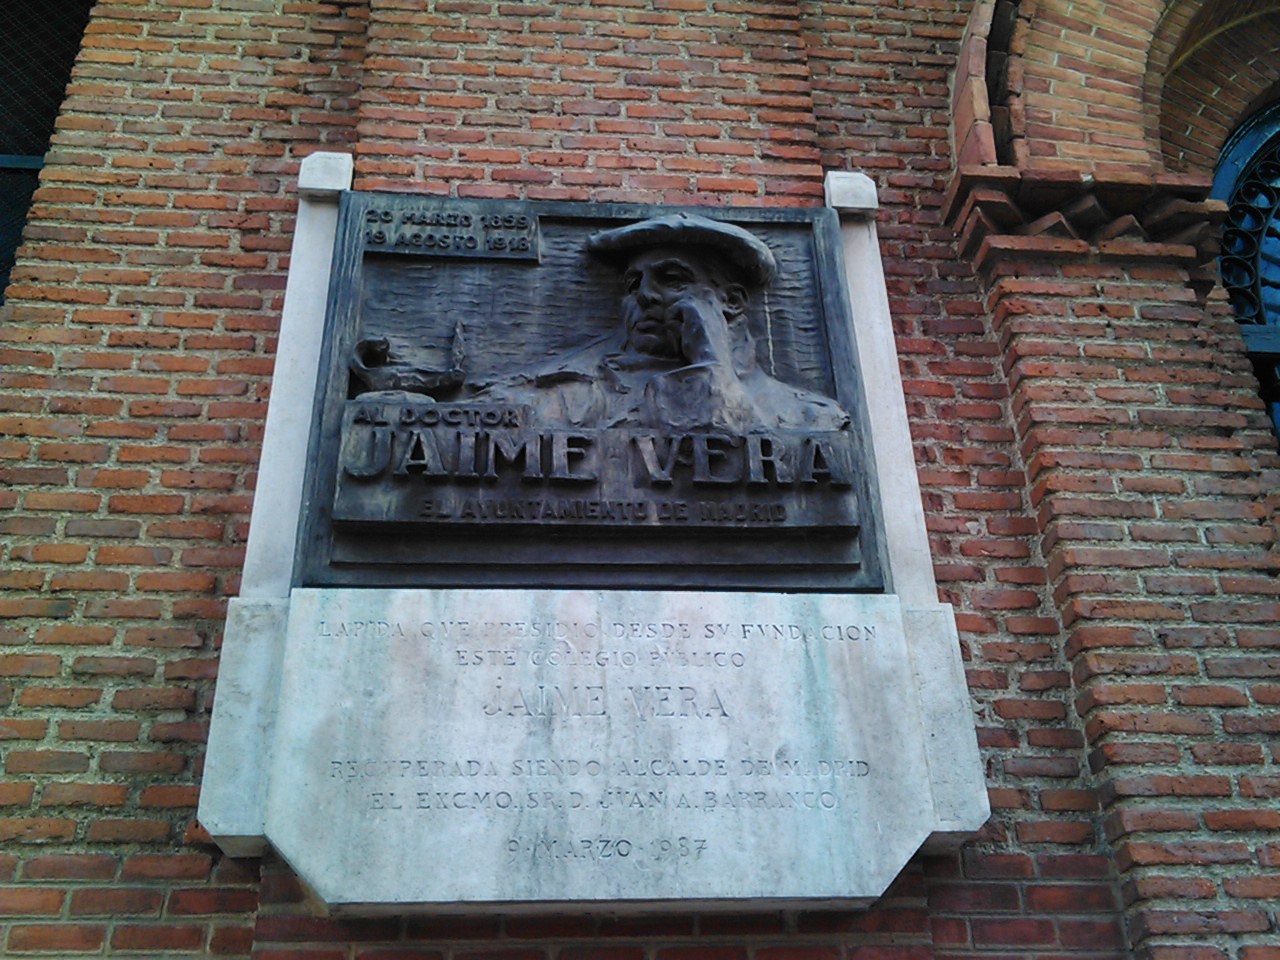 Instituto Jaime Vera